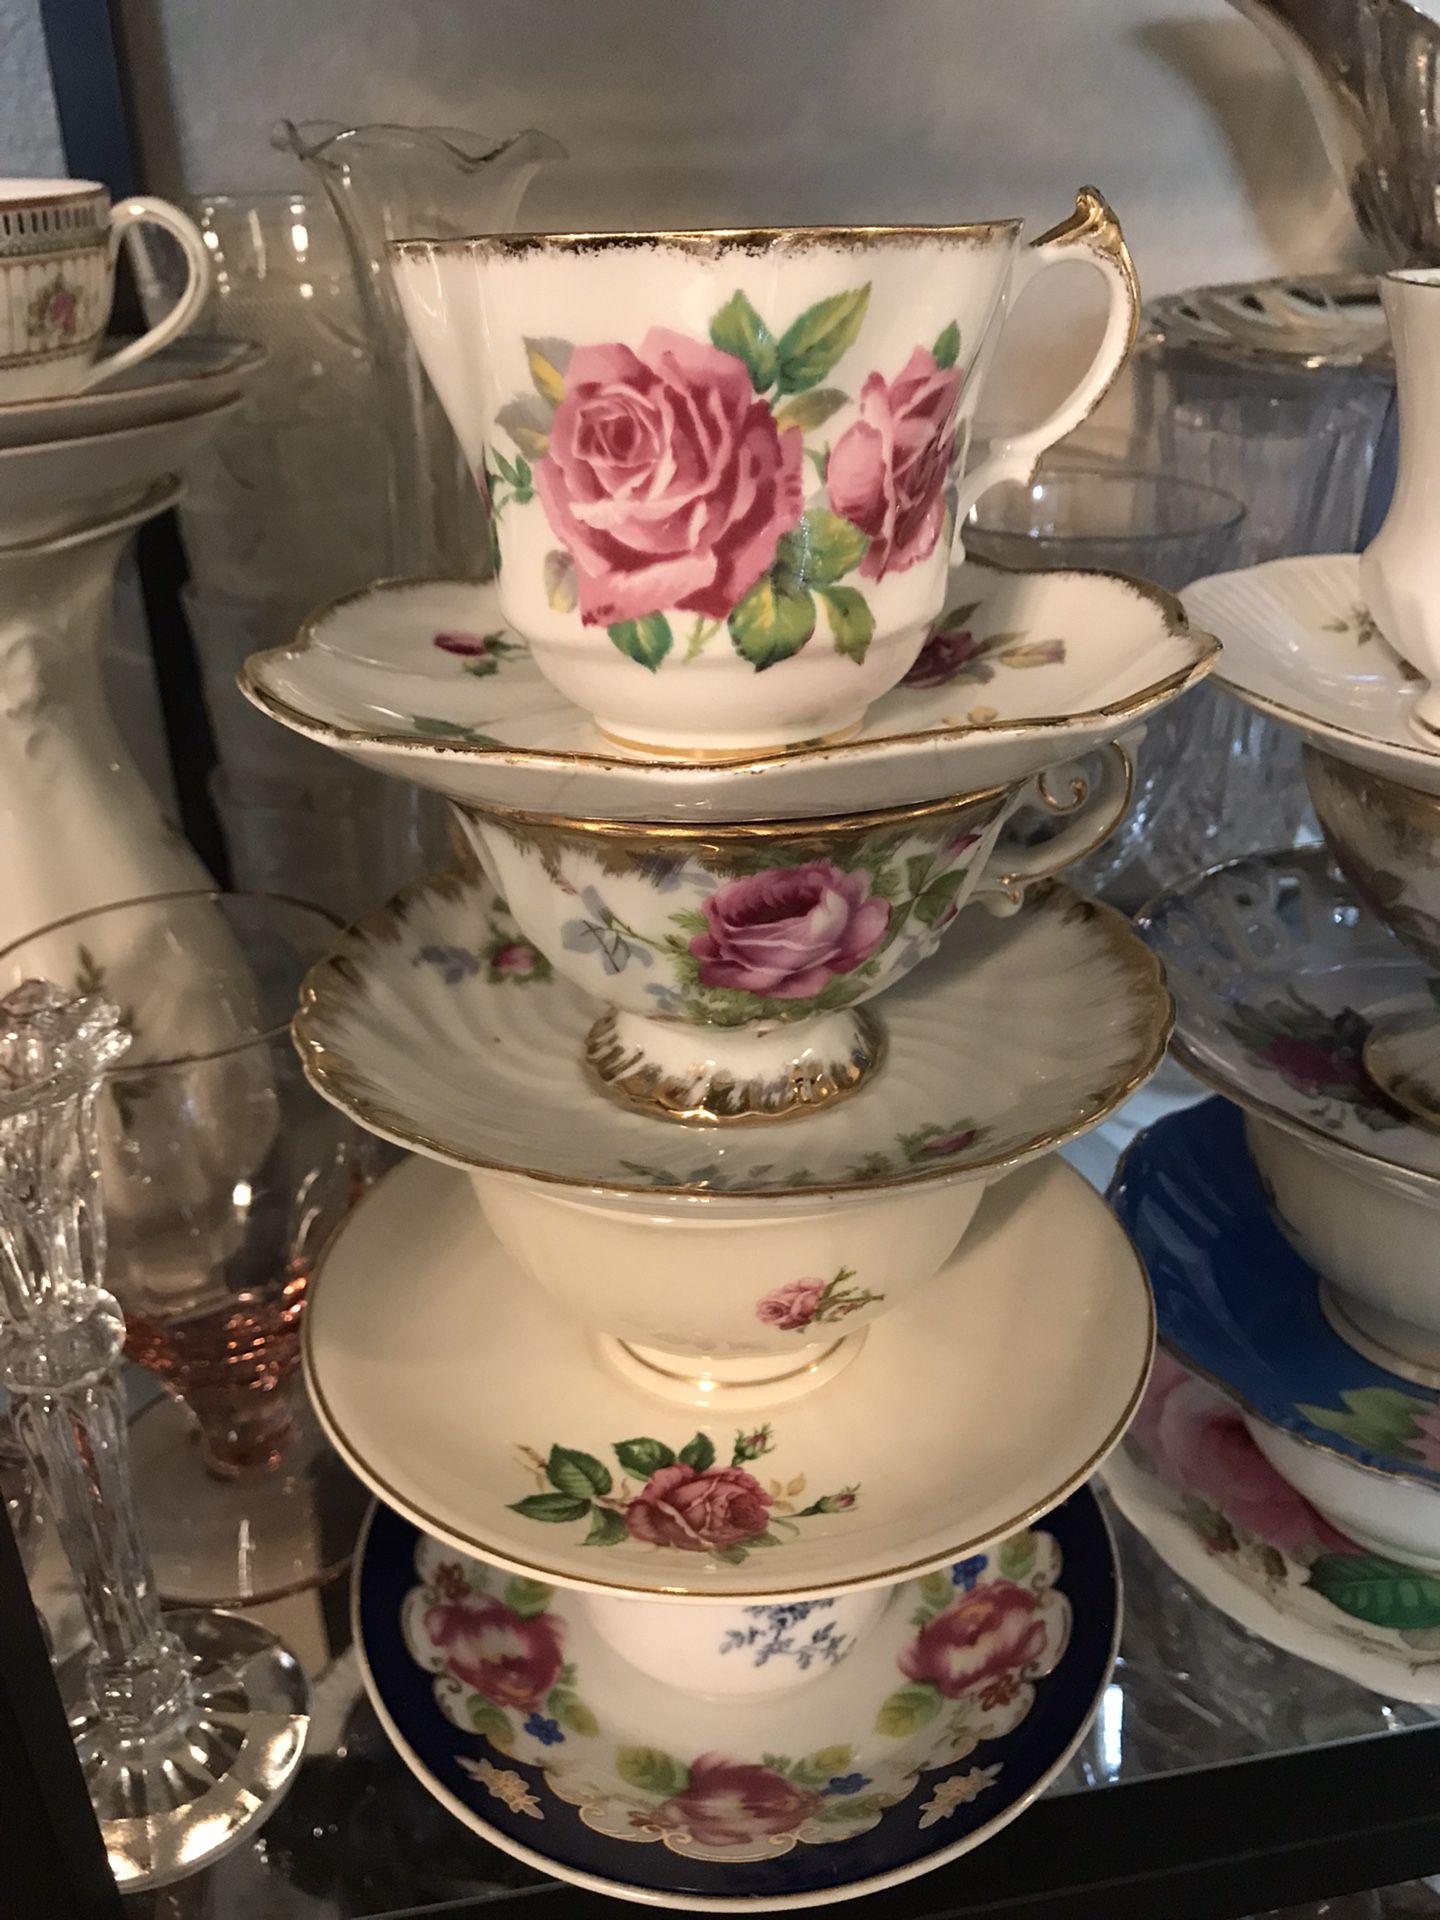 Vintage Teacups & Teapots ..Tea Parties🌸🍃